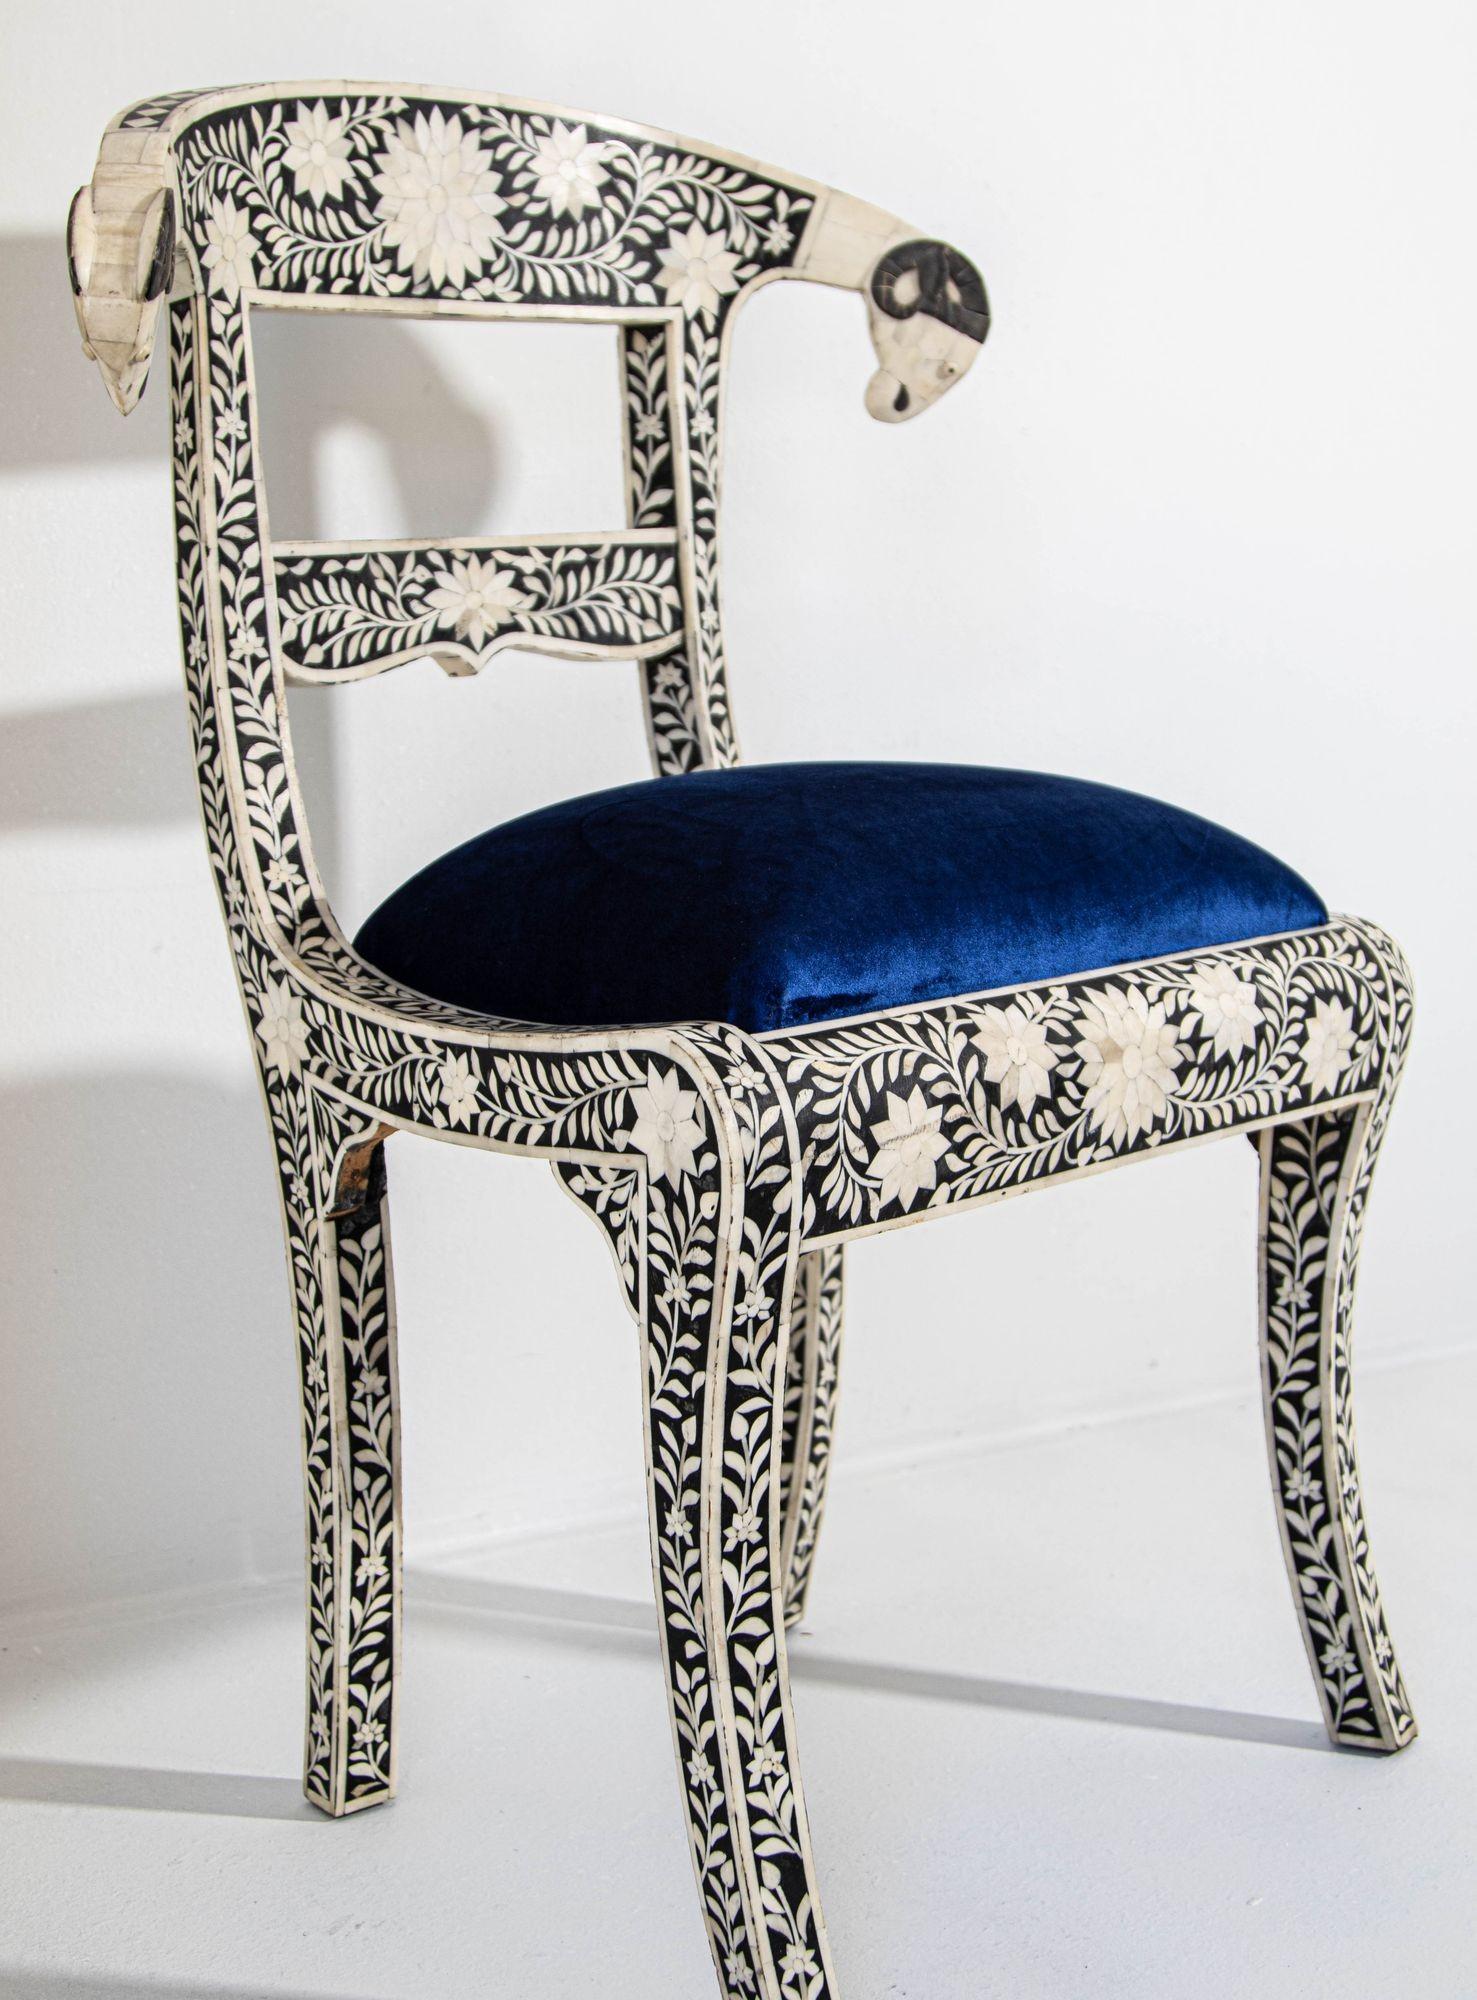 Chaise d'appoint anglo-indienne en noir et blanc avec tête de bélier.
Cette superbe chaise présente un cadre en bois incrusté de motifs floraux complexes et détaillés en blanc et noir et de têtes de bélier en volutes.
L'assise est recouverte d'un